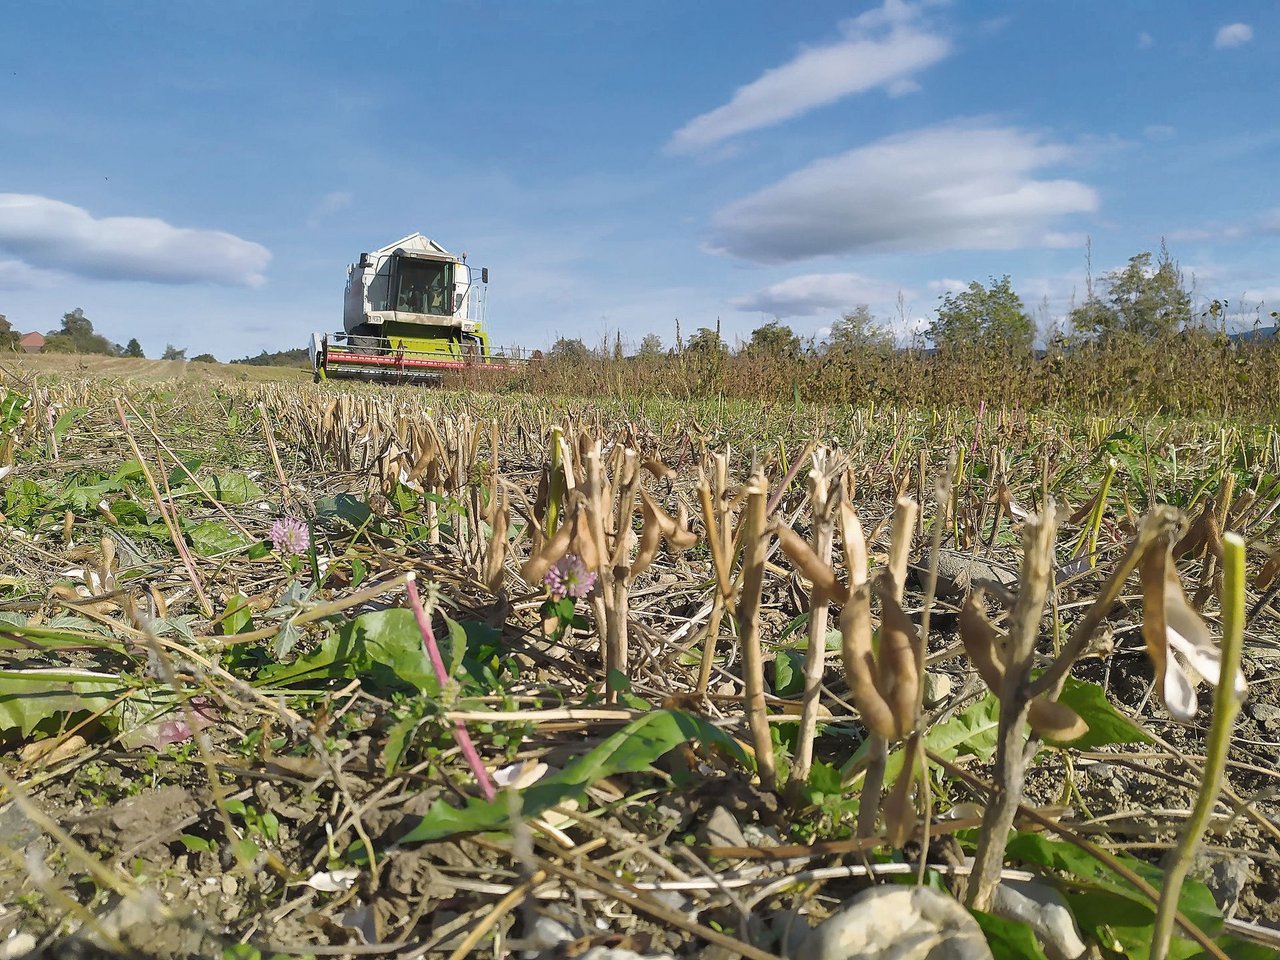 Ein zu hoher Schnitt, eine unsorgfältige Ernte oder ein unebener Boden kann zu Ernteverlusten von mehreren Dezitonnen pro Hektare führen. (Bild Matthias Klaiss)